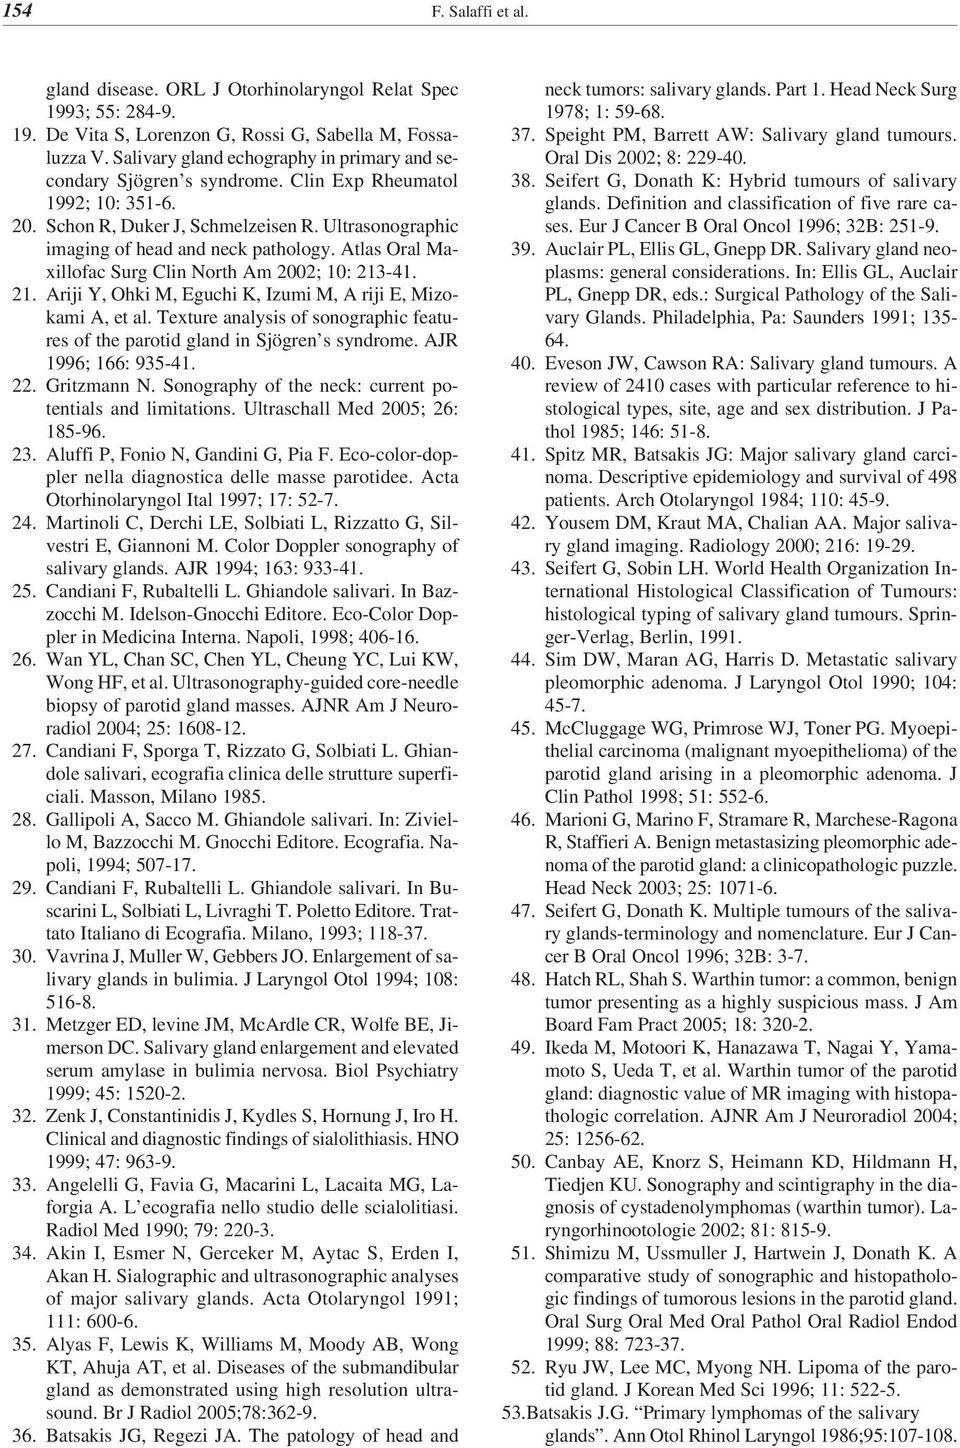 Atlas Oral Maxillofac Surg Clin North Am 2002; 10: 213-41. 21. Ariji Y, Ohki M, Eguchi K, Izumi M, A riji E, Mizokami A, et al.